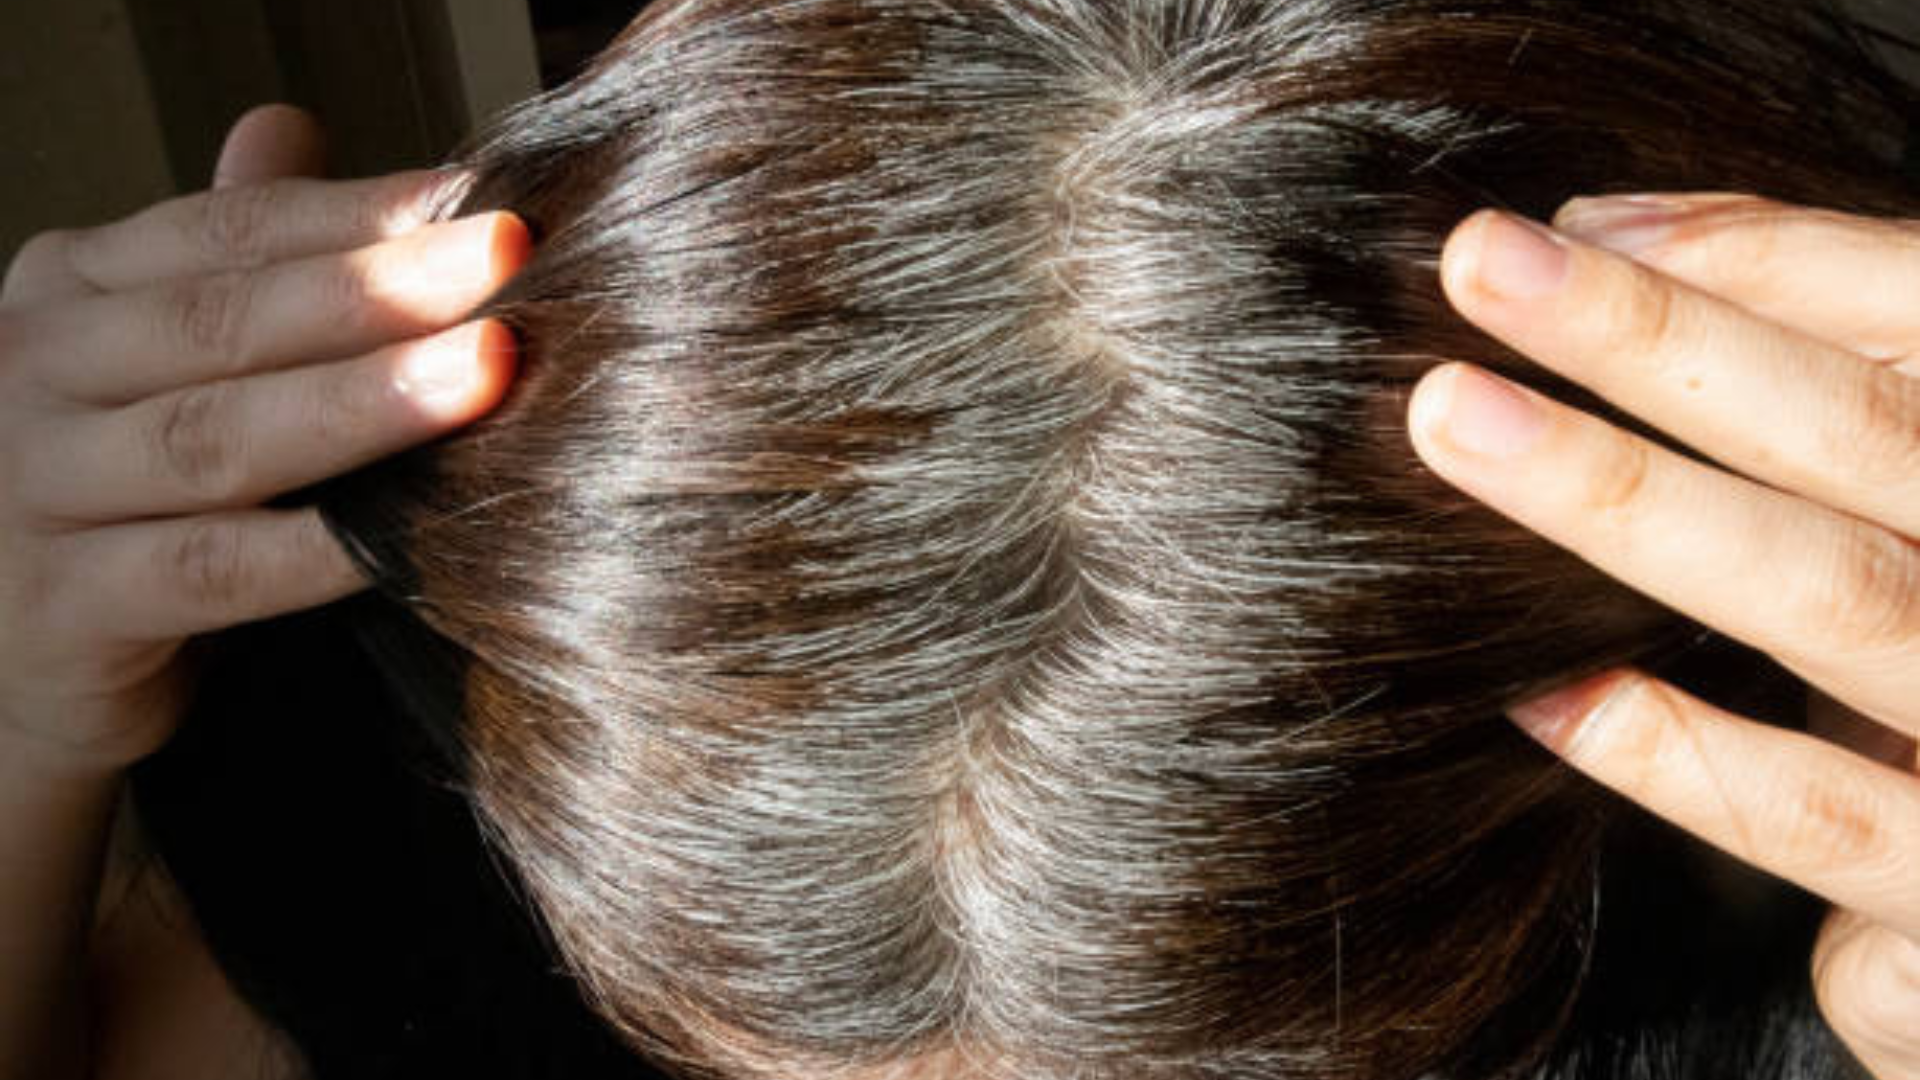 Không thiếu những mẹo tuyệt vời giúp bạn chống lại tình trạng tóc bạc sớm, nhưng bạn cần phải kiên trì thực hiện mới hiệu quả. (Ảnh minh hoạ: Pixabay)